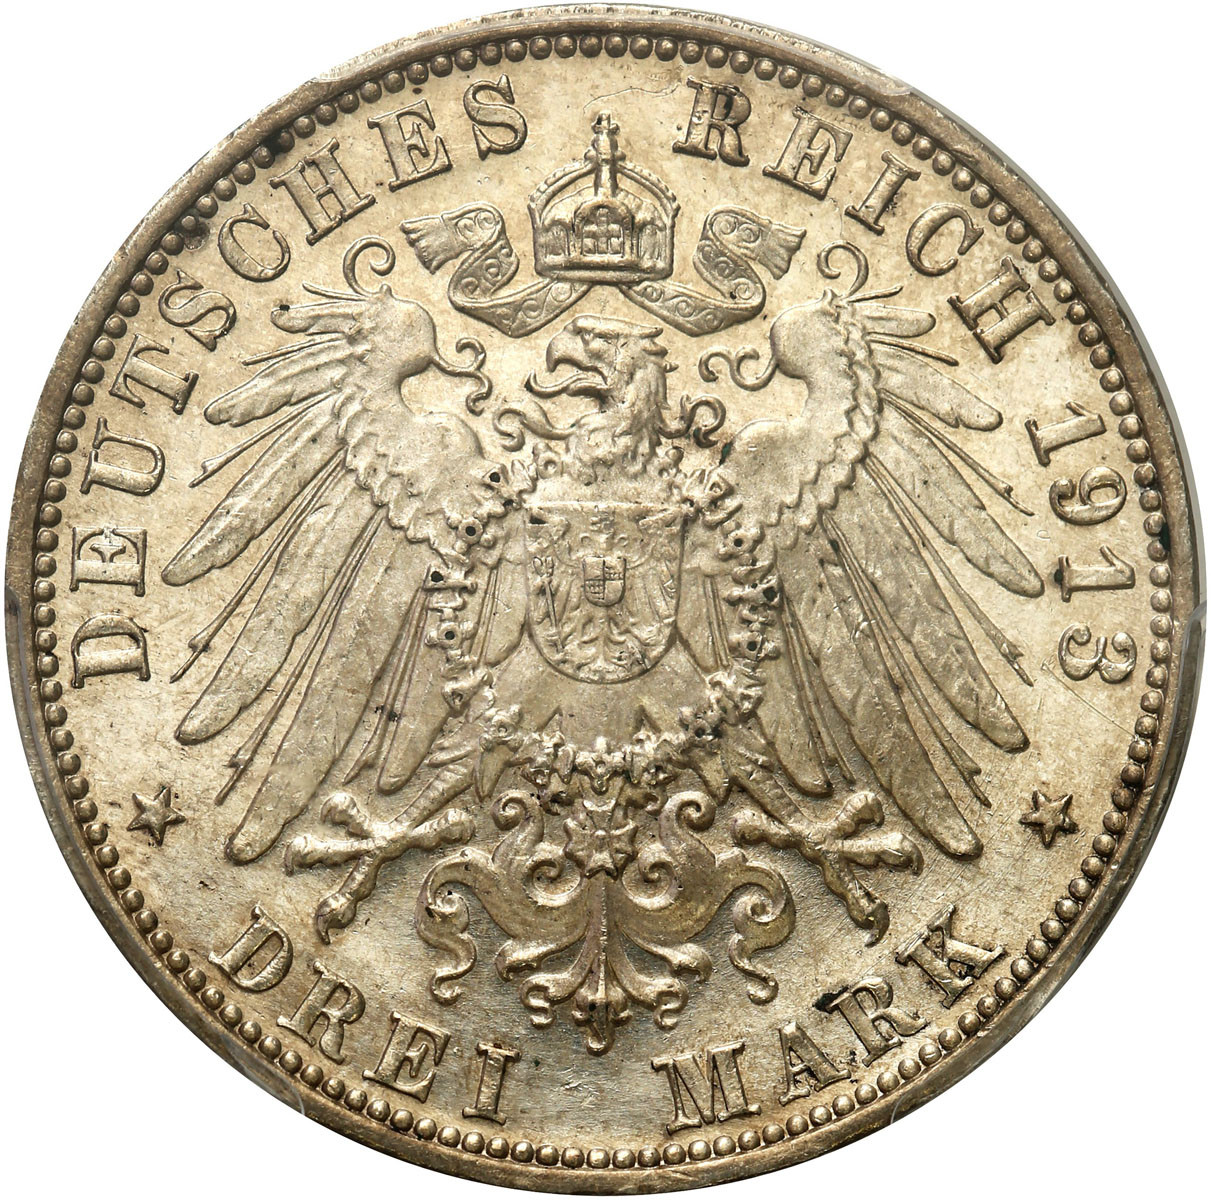 Niemcy, Saksonia. 3 marki 1913 E, Muldenhütten PCGS MS62 - PIĘKNE